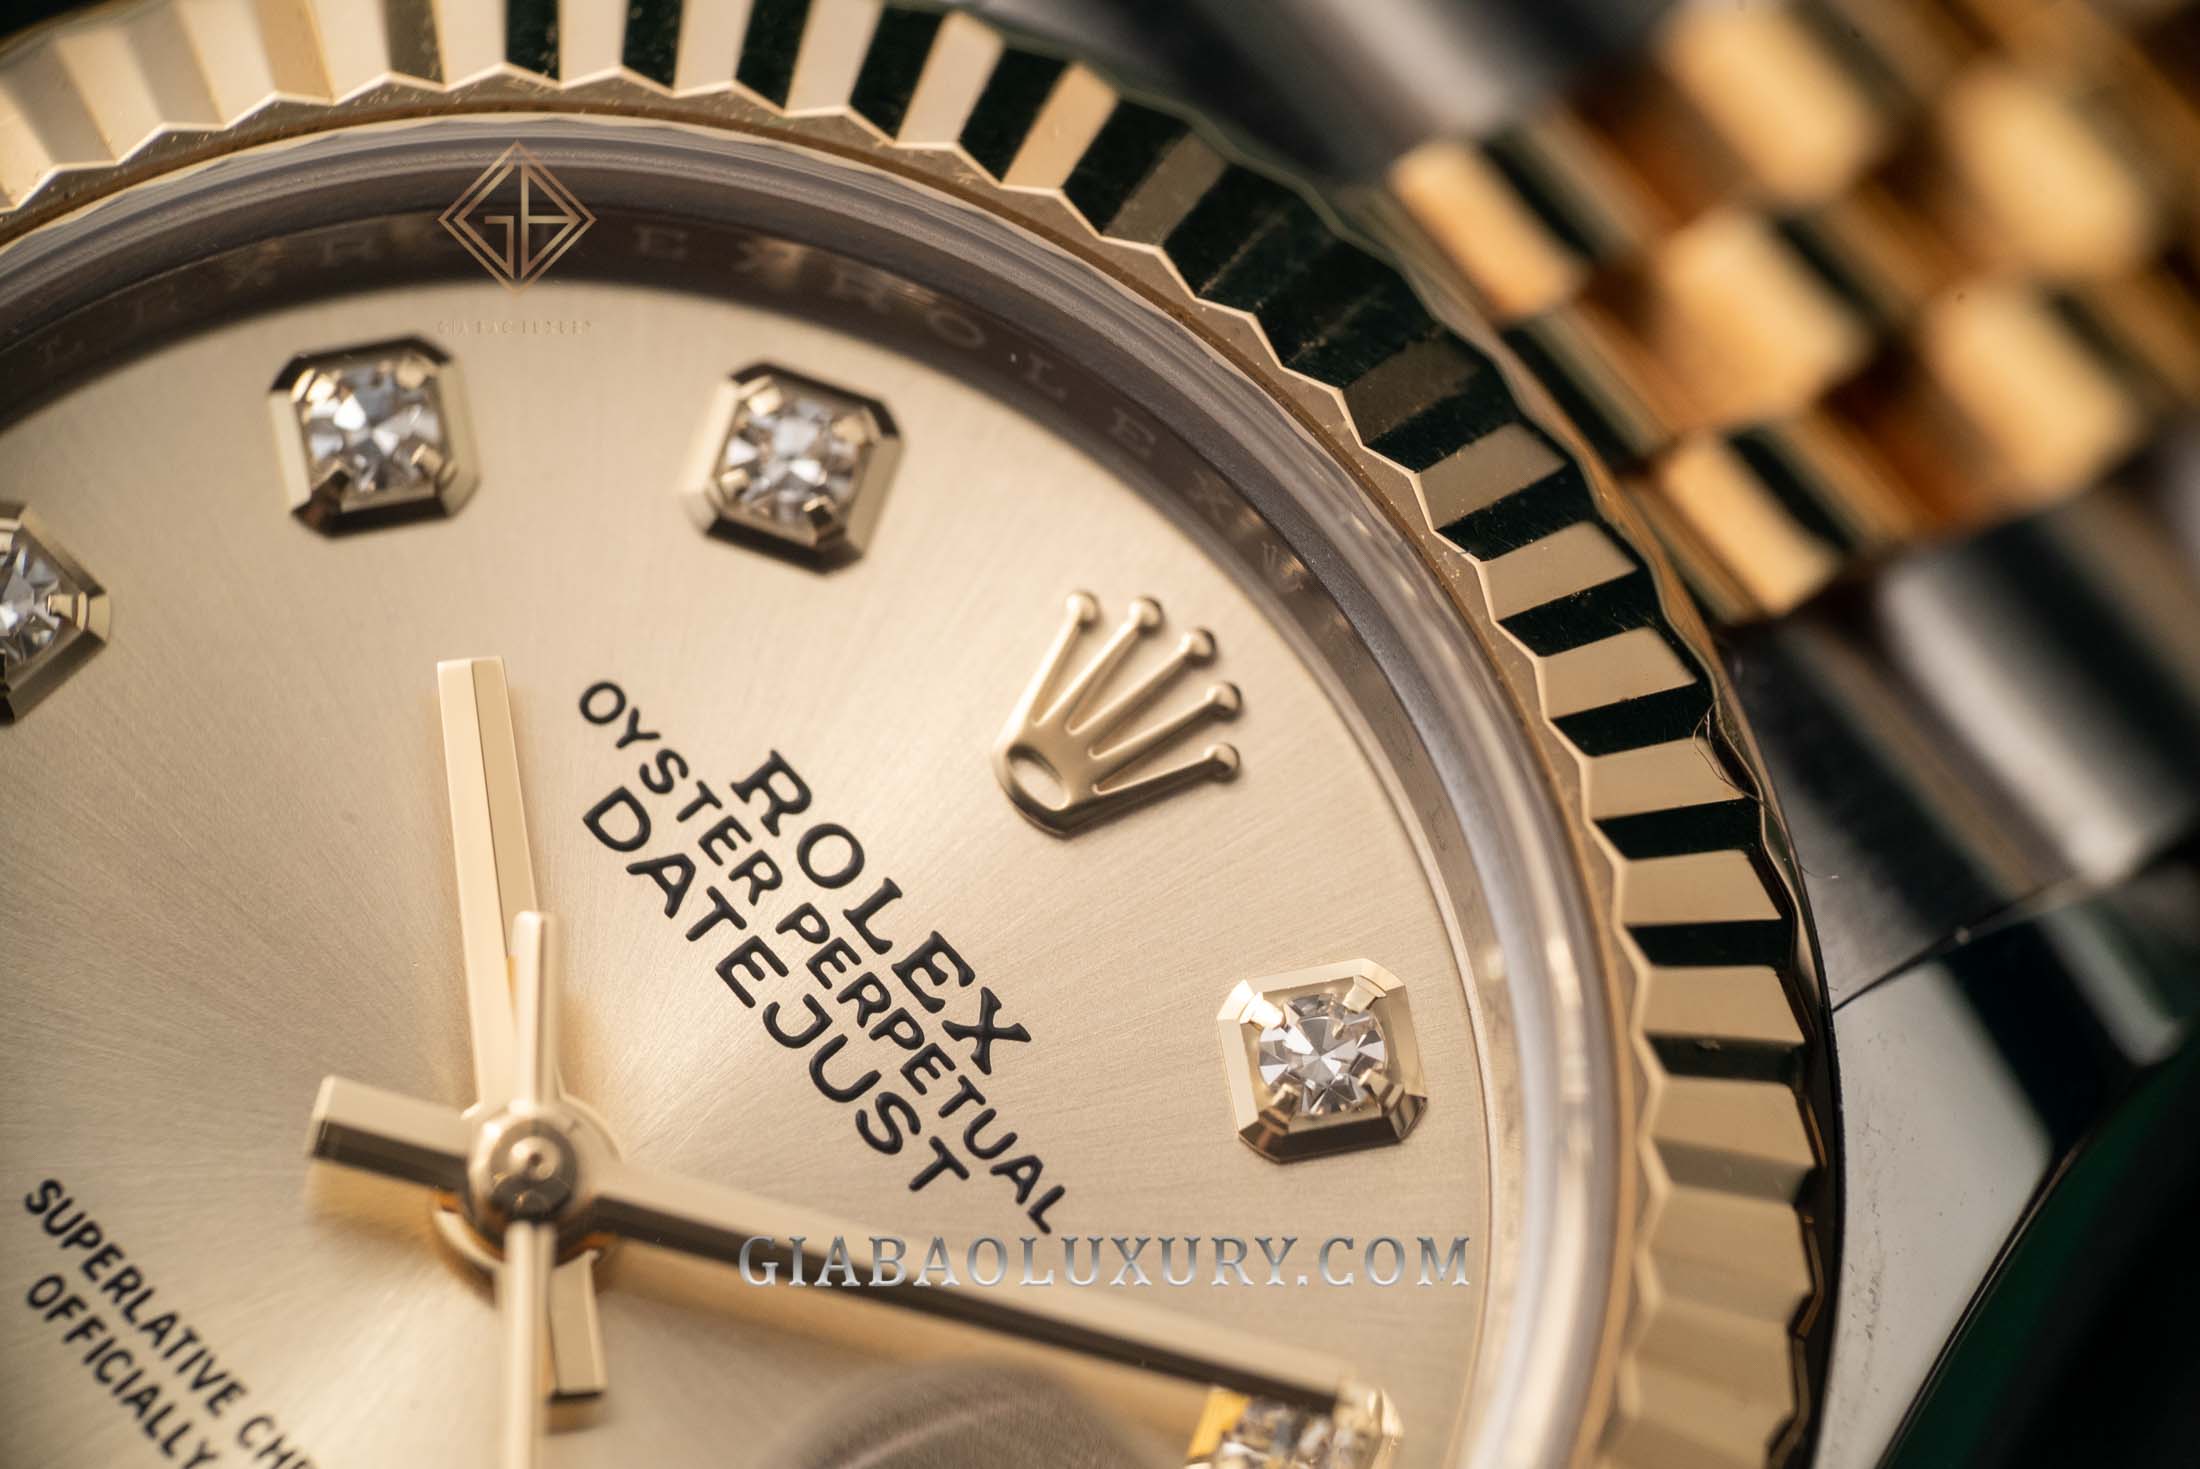 Rolex sử dụng loại kim cương nào để chế tạo đồng hồ?